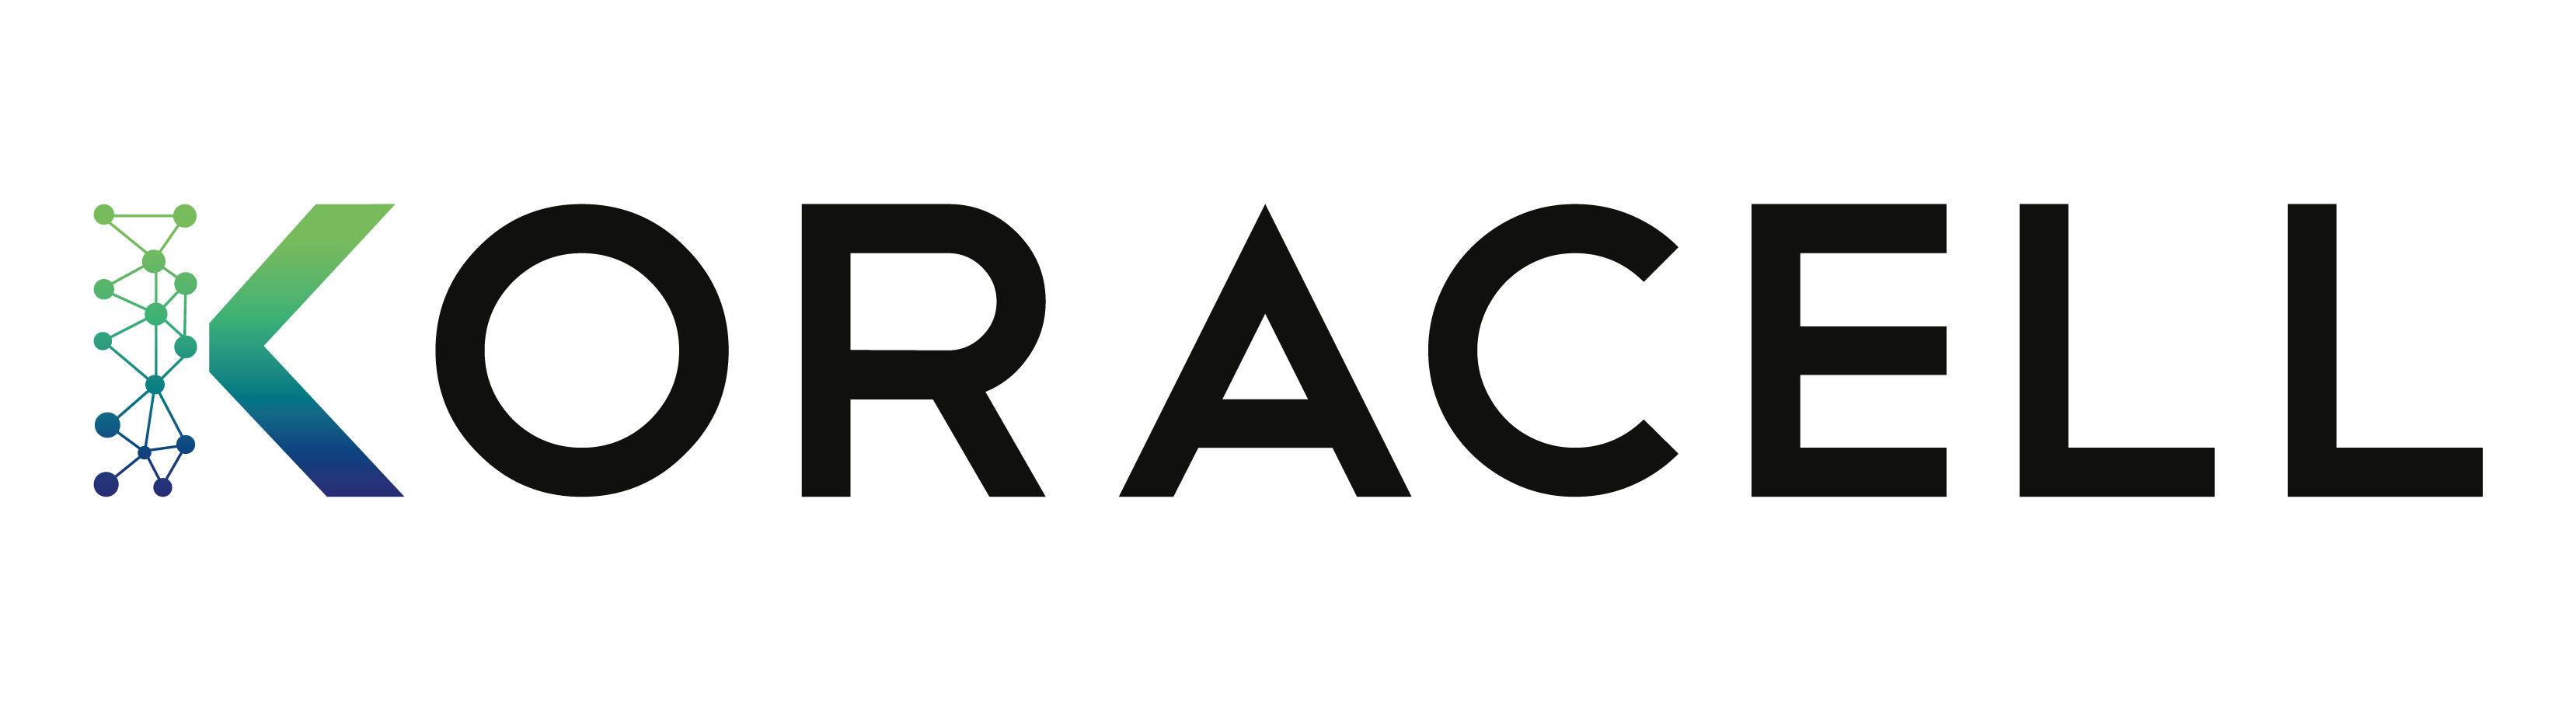 Koracell logo